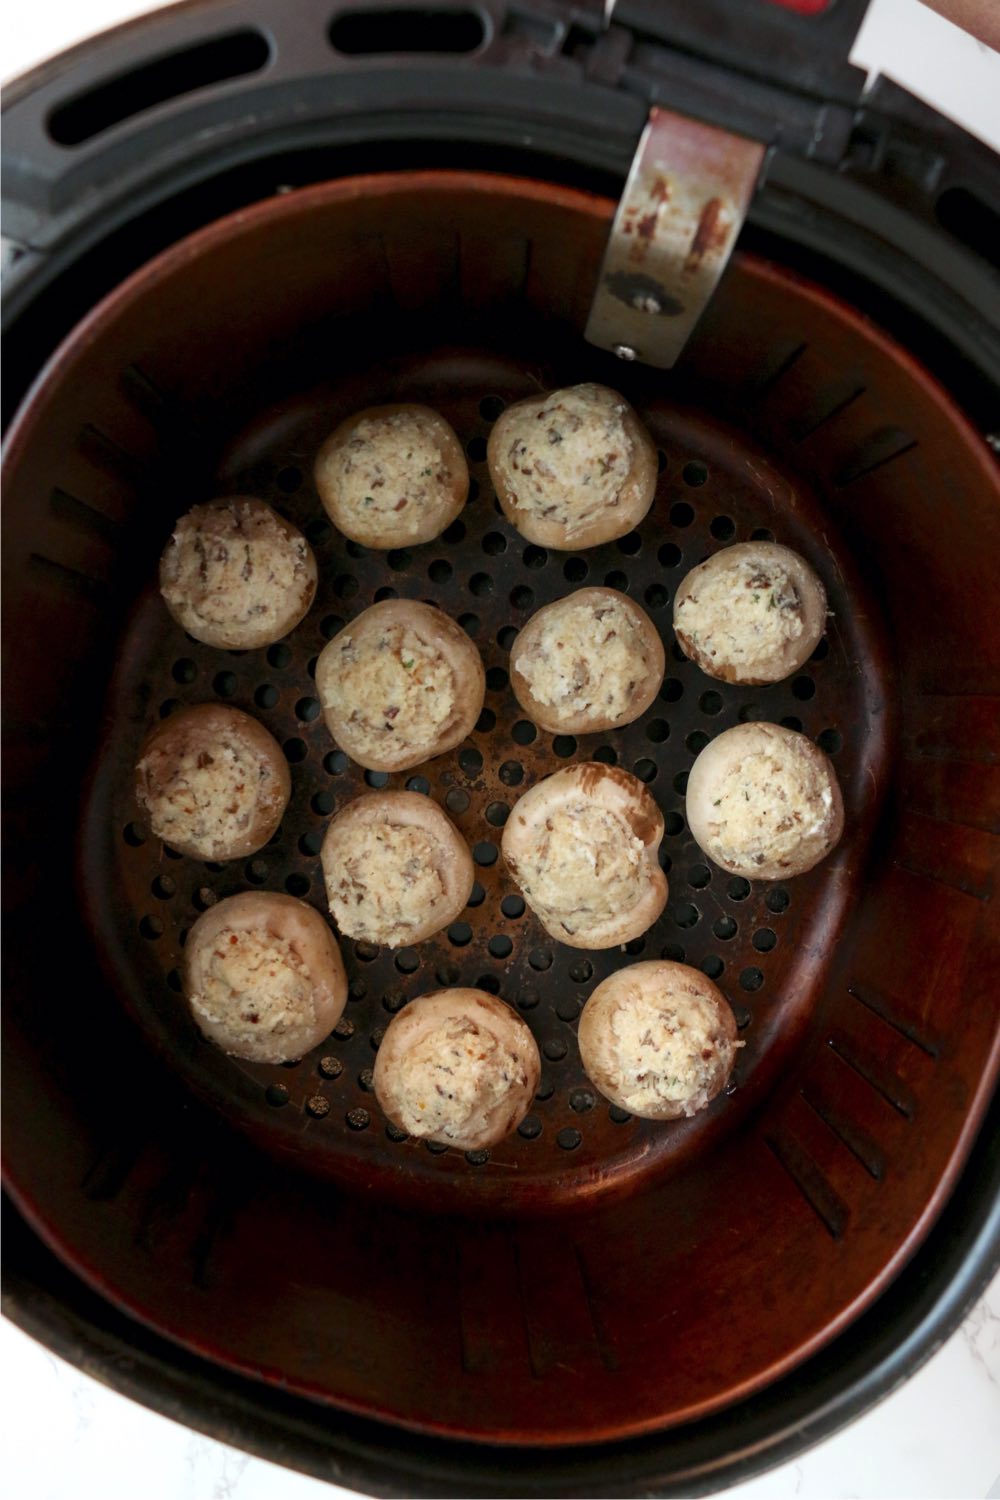 stuffed mushroom caps in air fryer basket